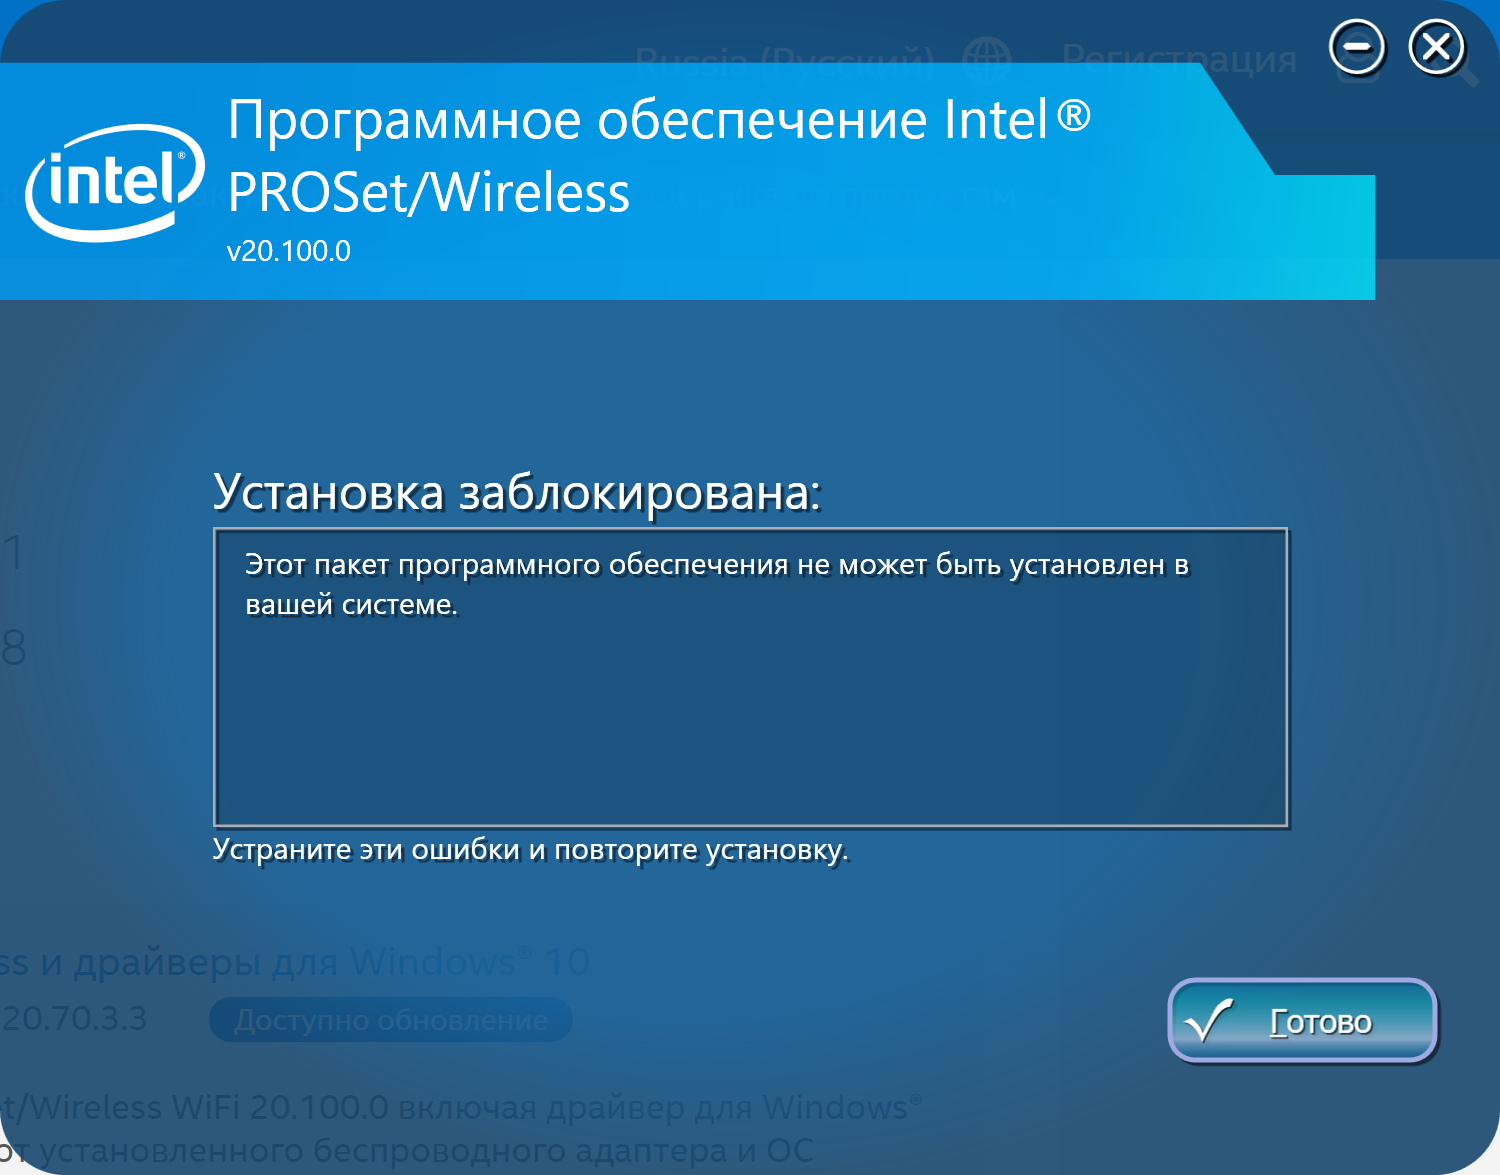 Intel PROSET Wireless. Драйвер был заблокирован. Блокировка в ин драйвер. Intel PROSET QFSP. Как установить про версию